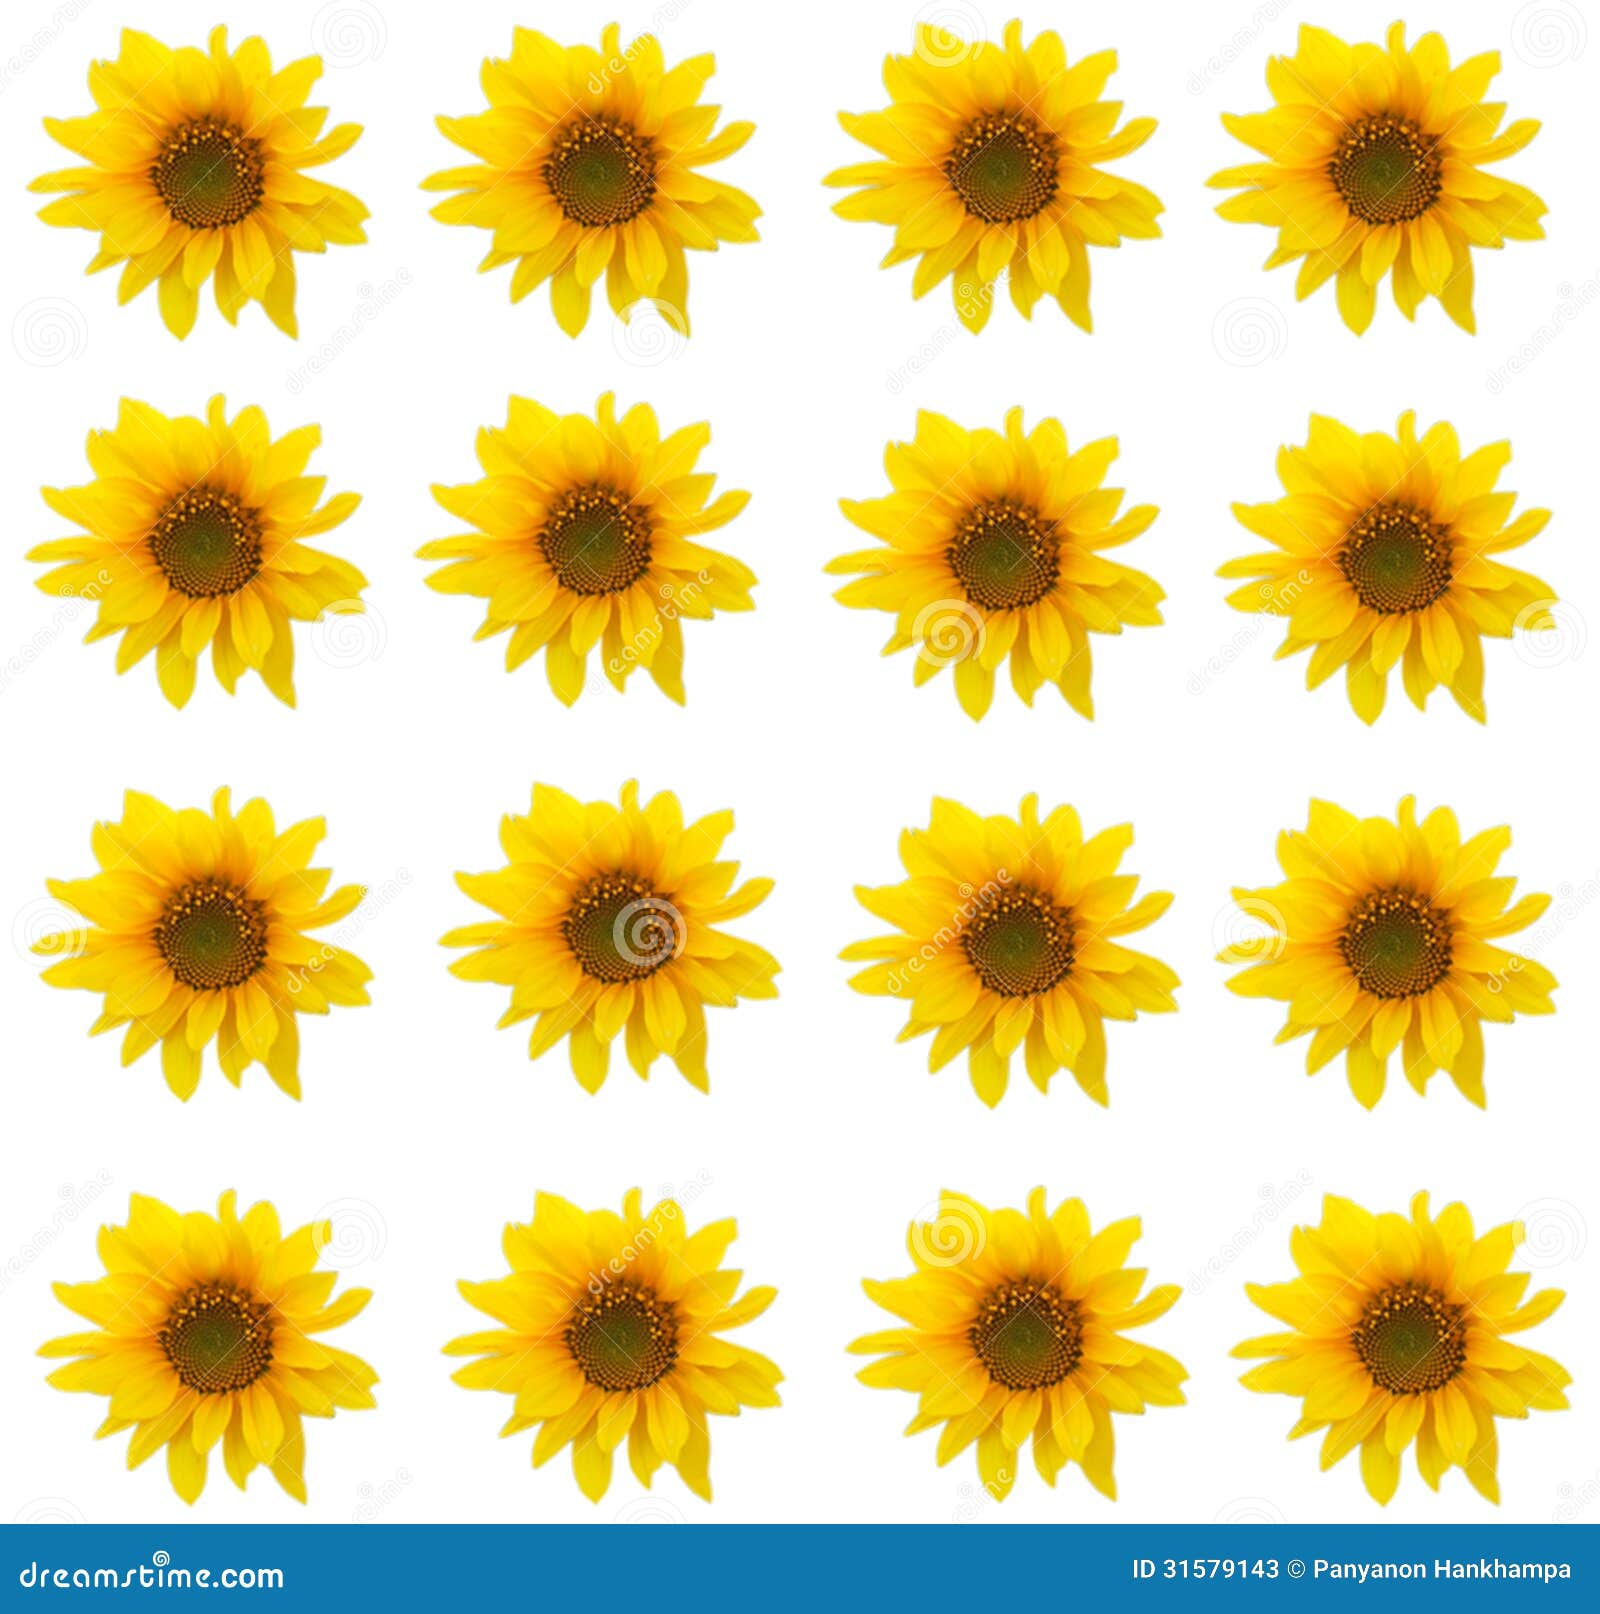 Eleletsitz Sunflowers Tumblr Background Images